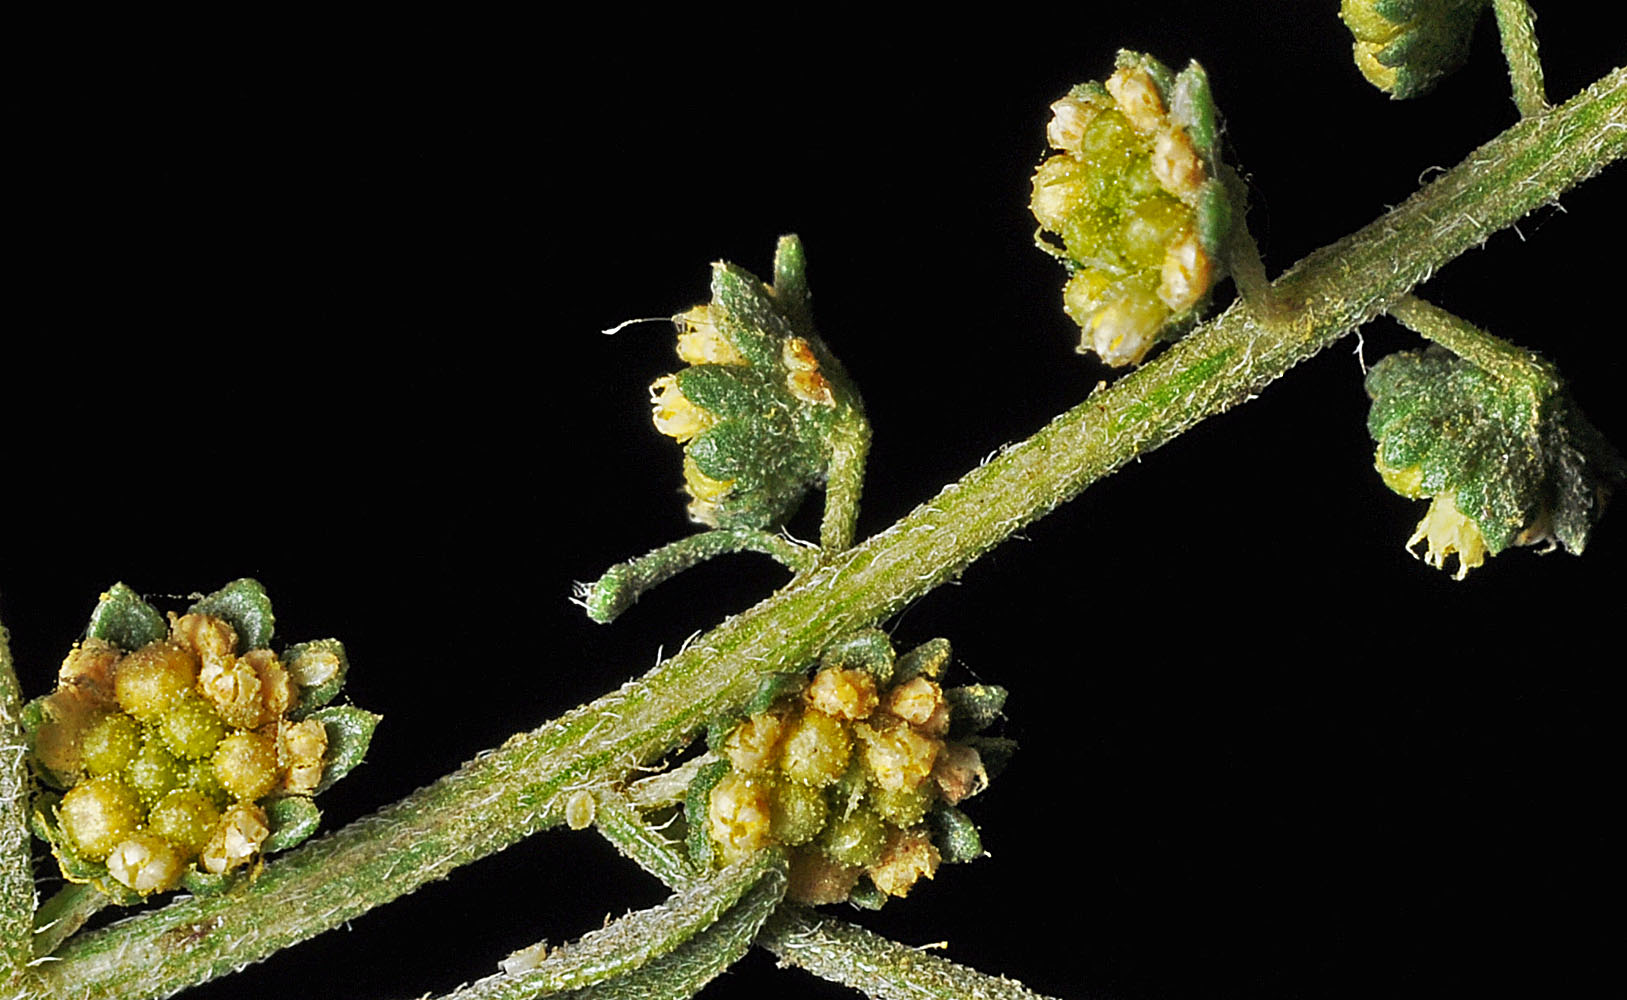 Flora of Eastern Washington Image: Ambrosia acanthicarpa